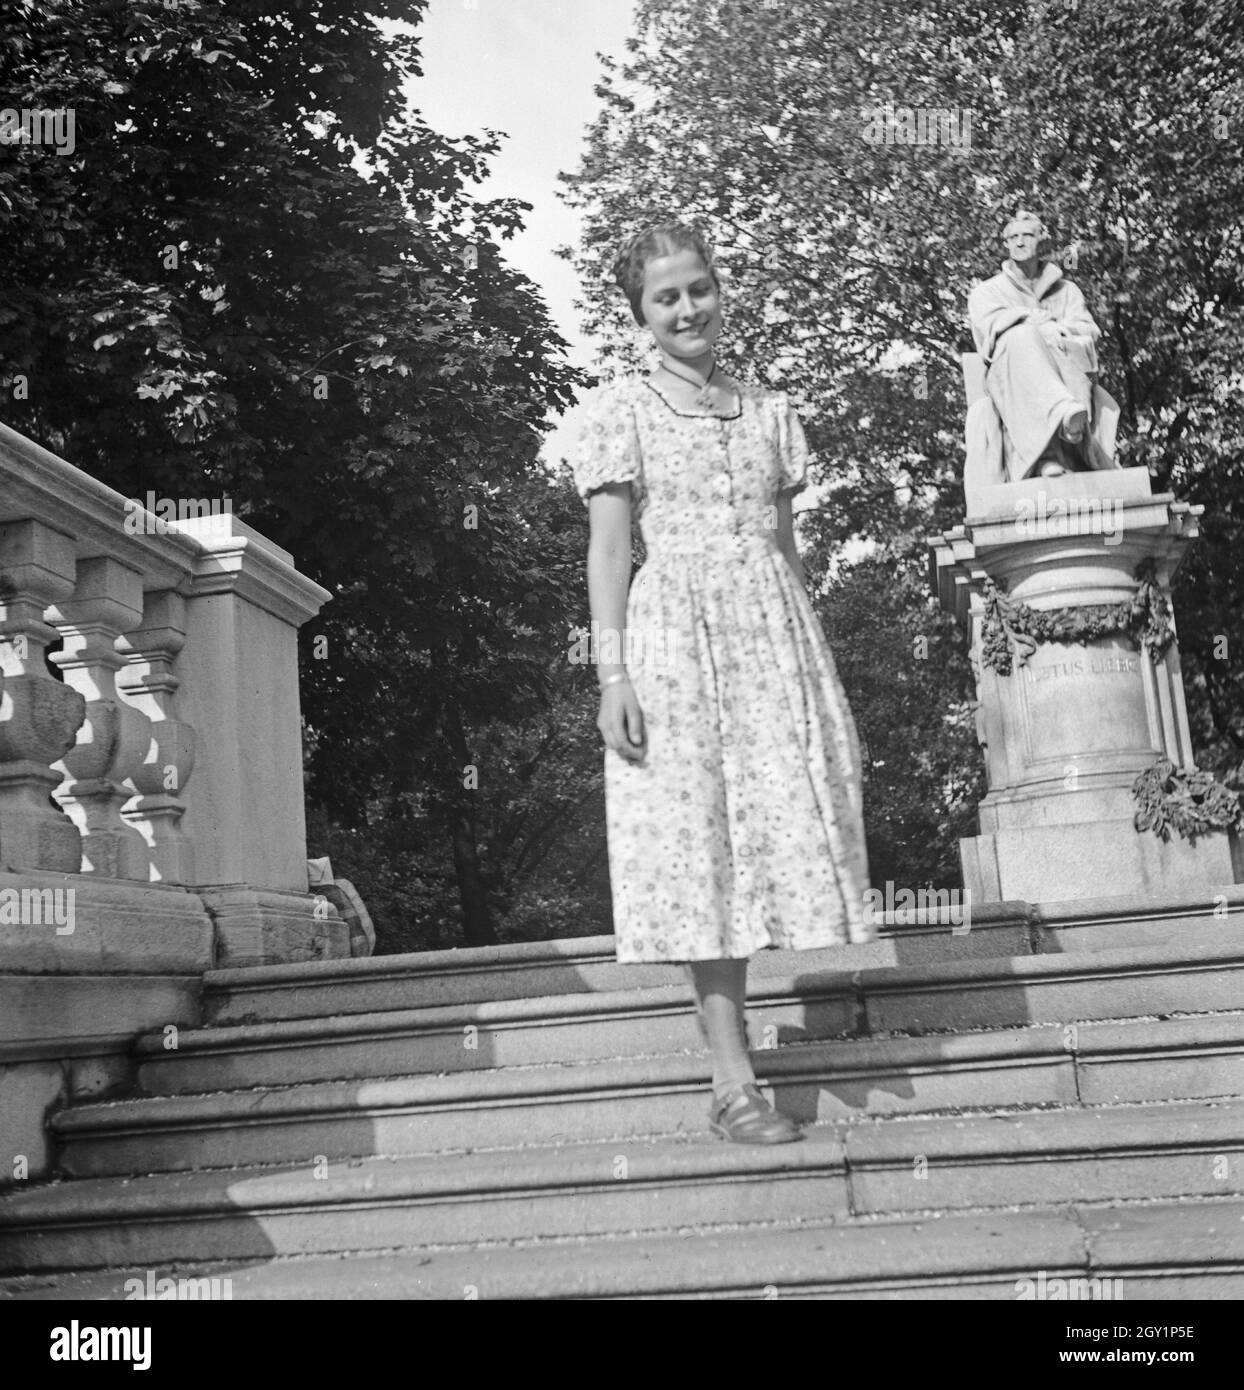 Eine junge Frau vor dem Denkmal von Justus von Liebig, Deutschland 1930er Jahre. Une jeune femme devant une sculpture de Jutus von Liebig, Allemagne des années 1930. Banque D'Images